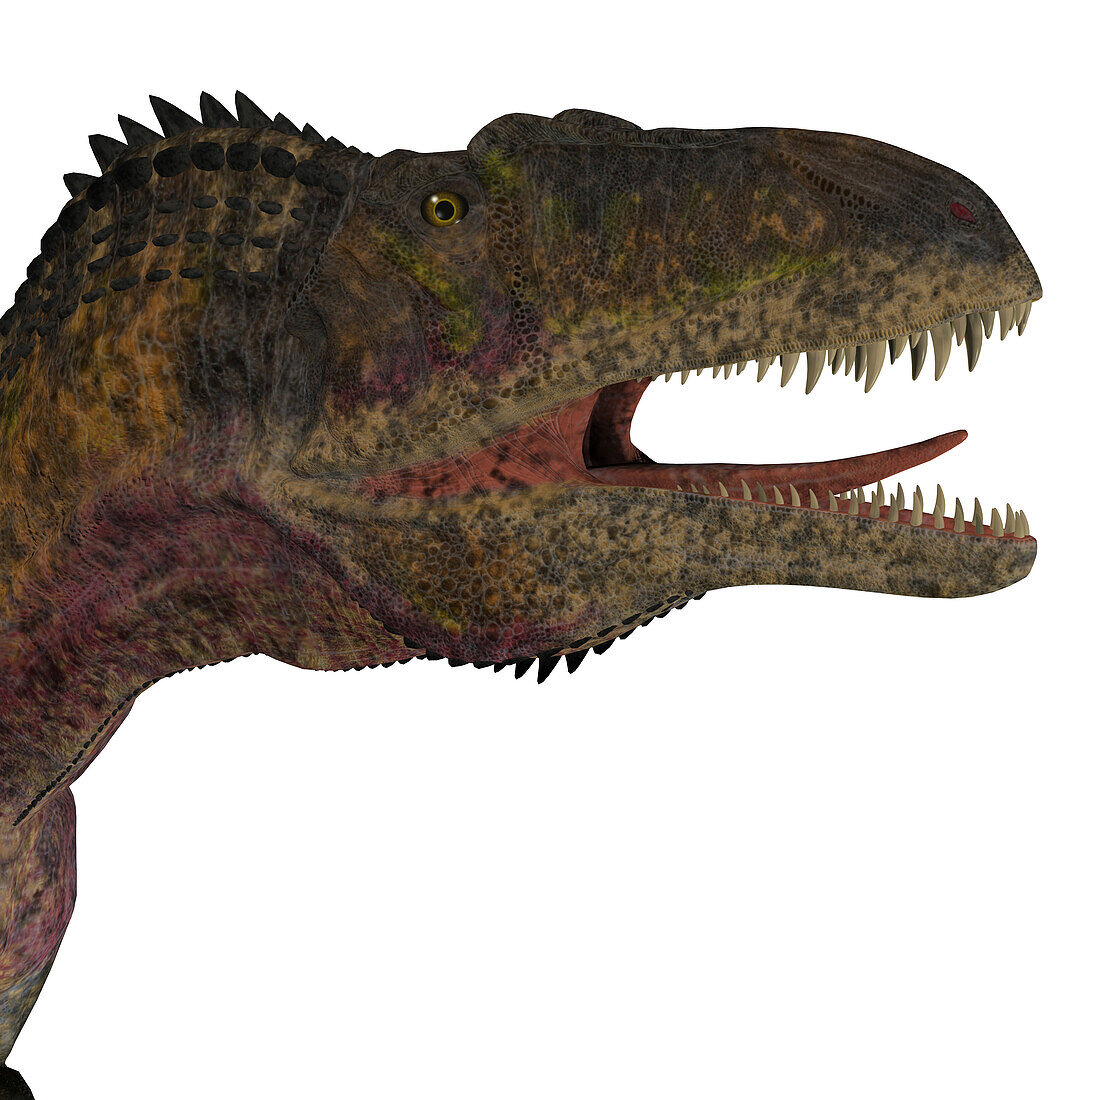 Acrocanthosaurus head, illustration